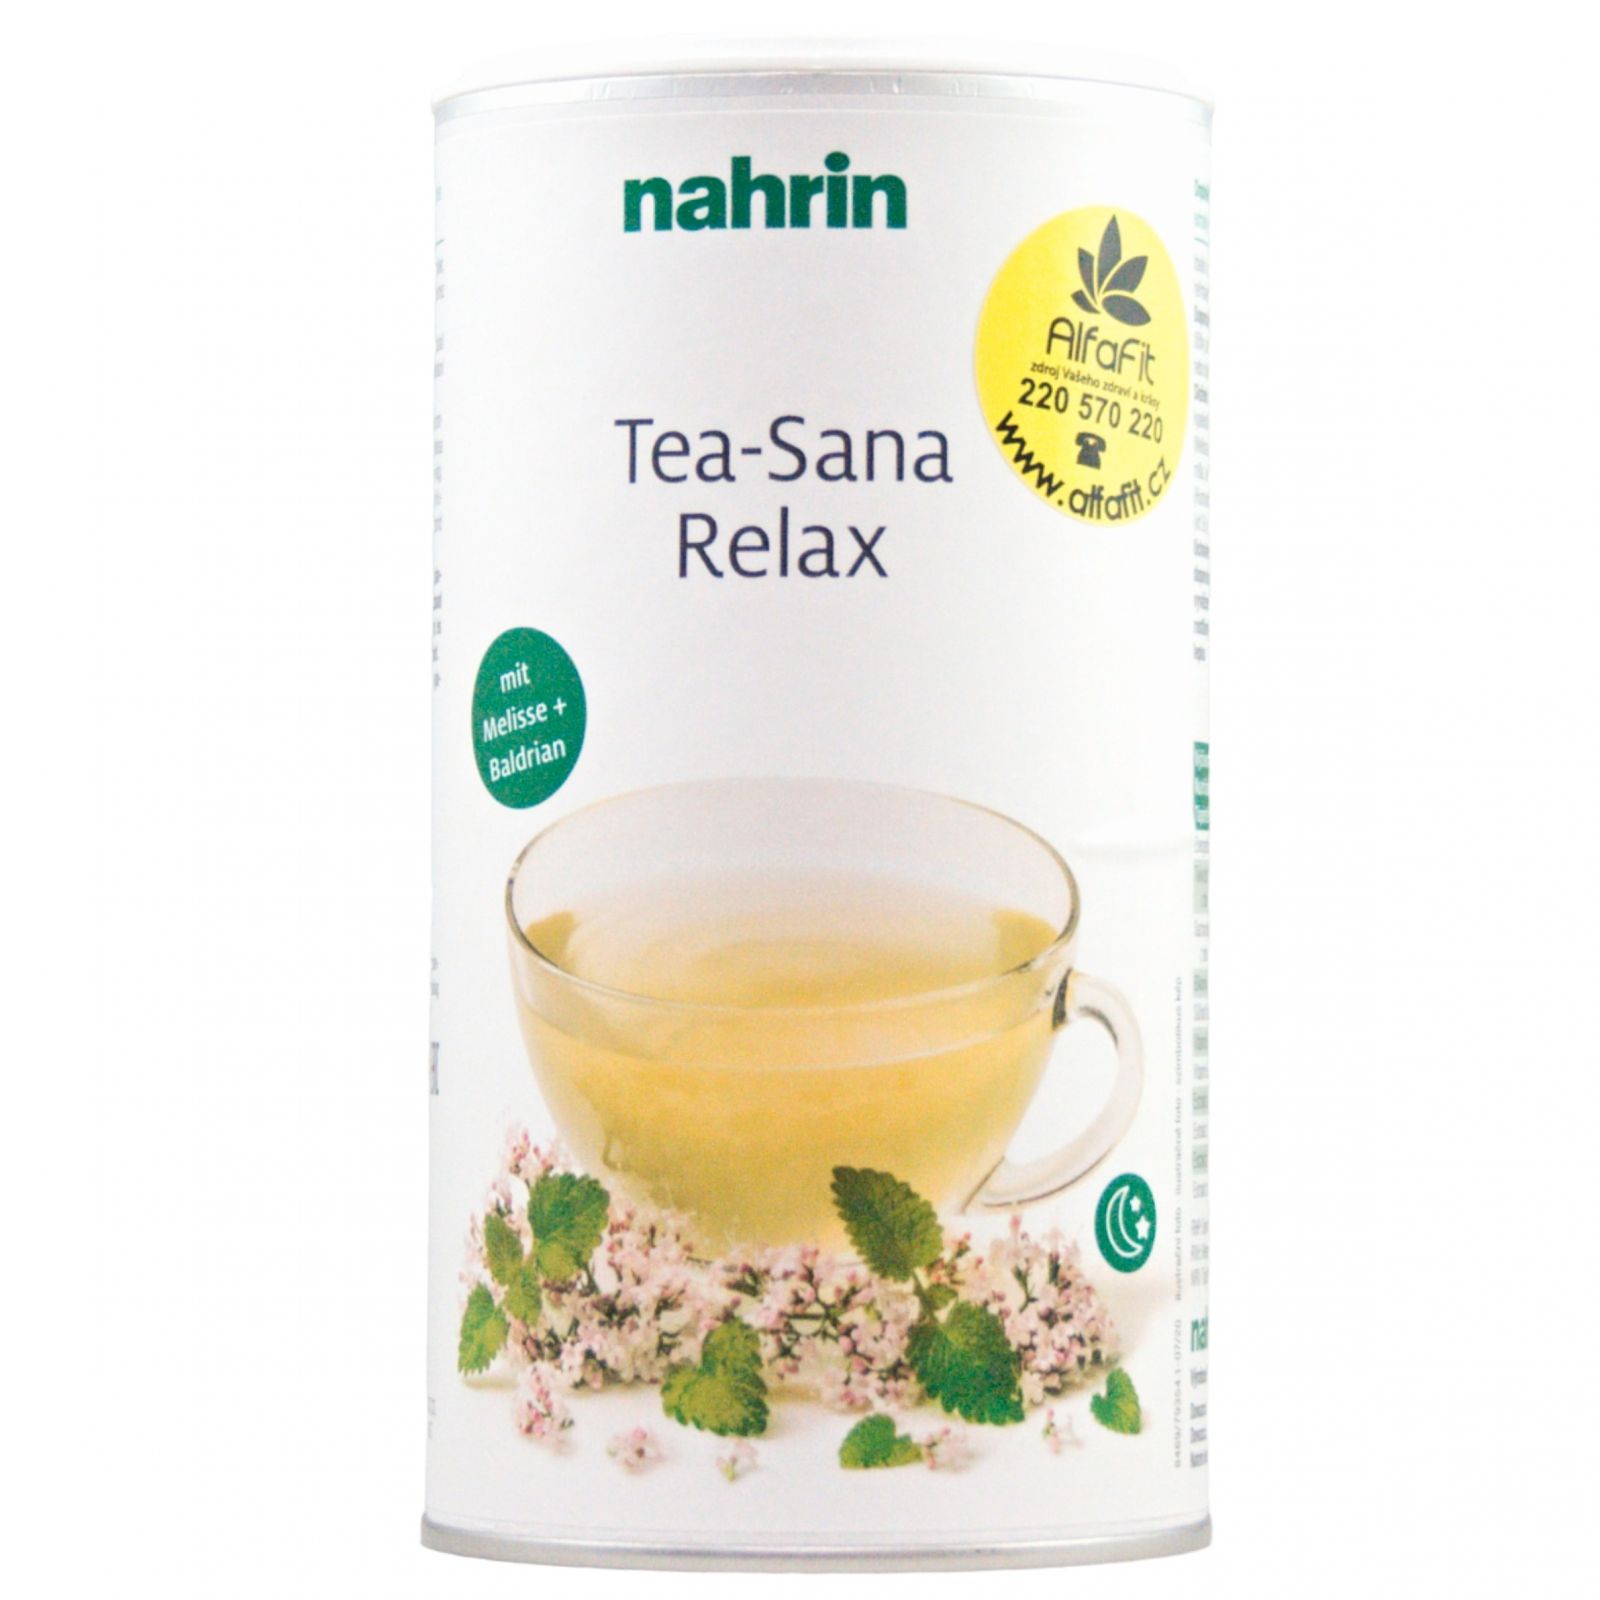  nahrin Tea-Sana Relax 300 g